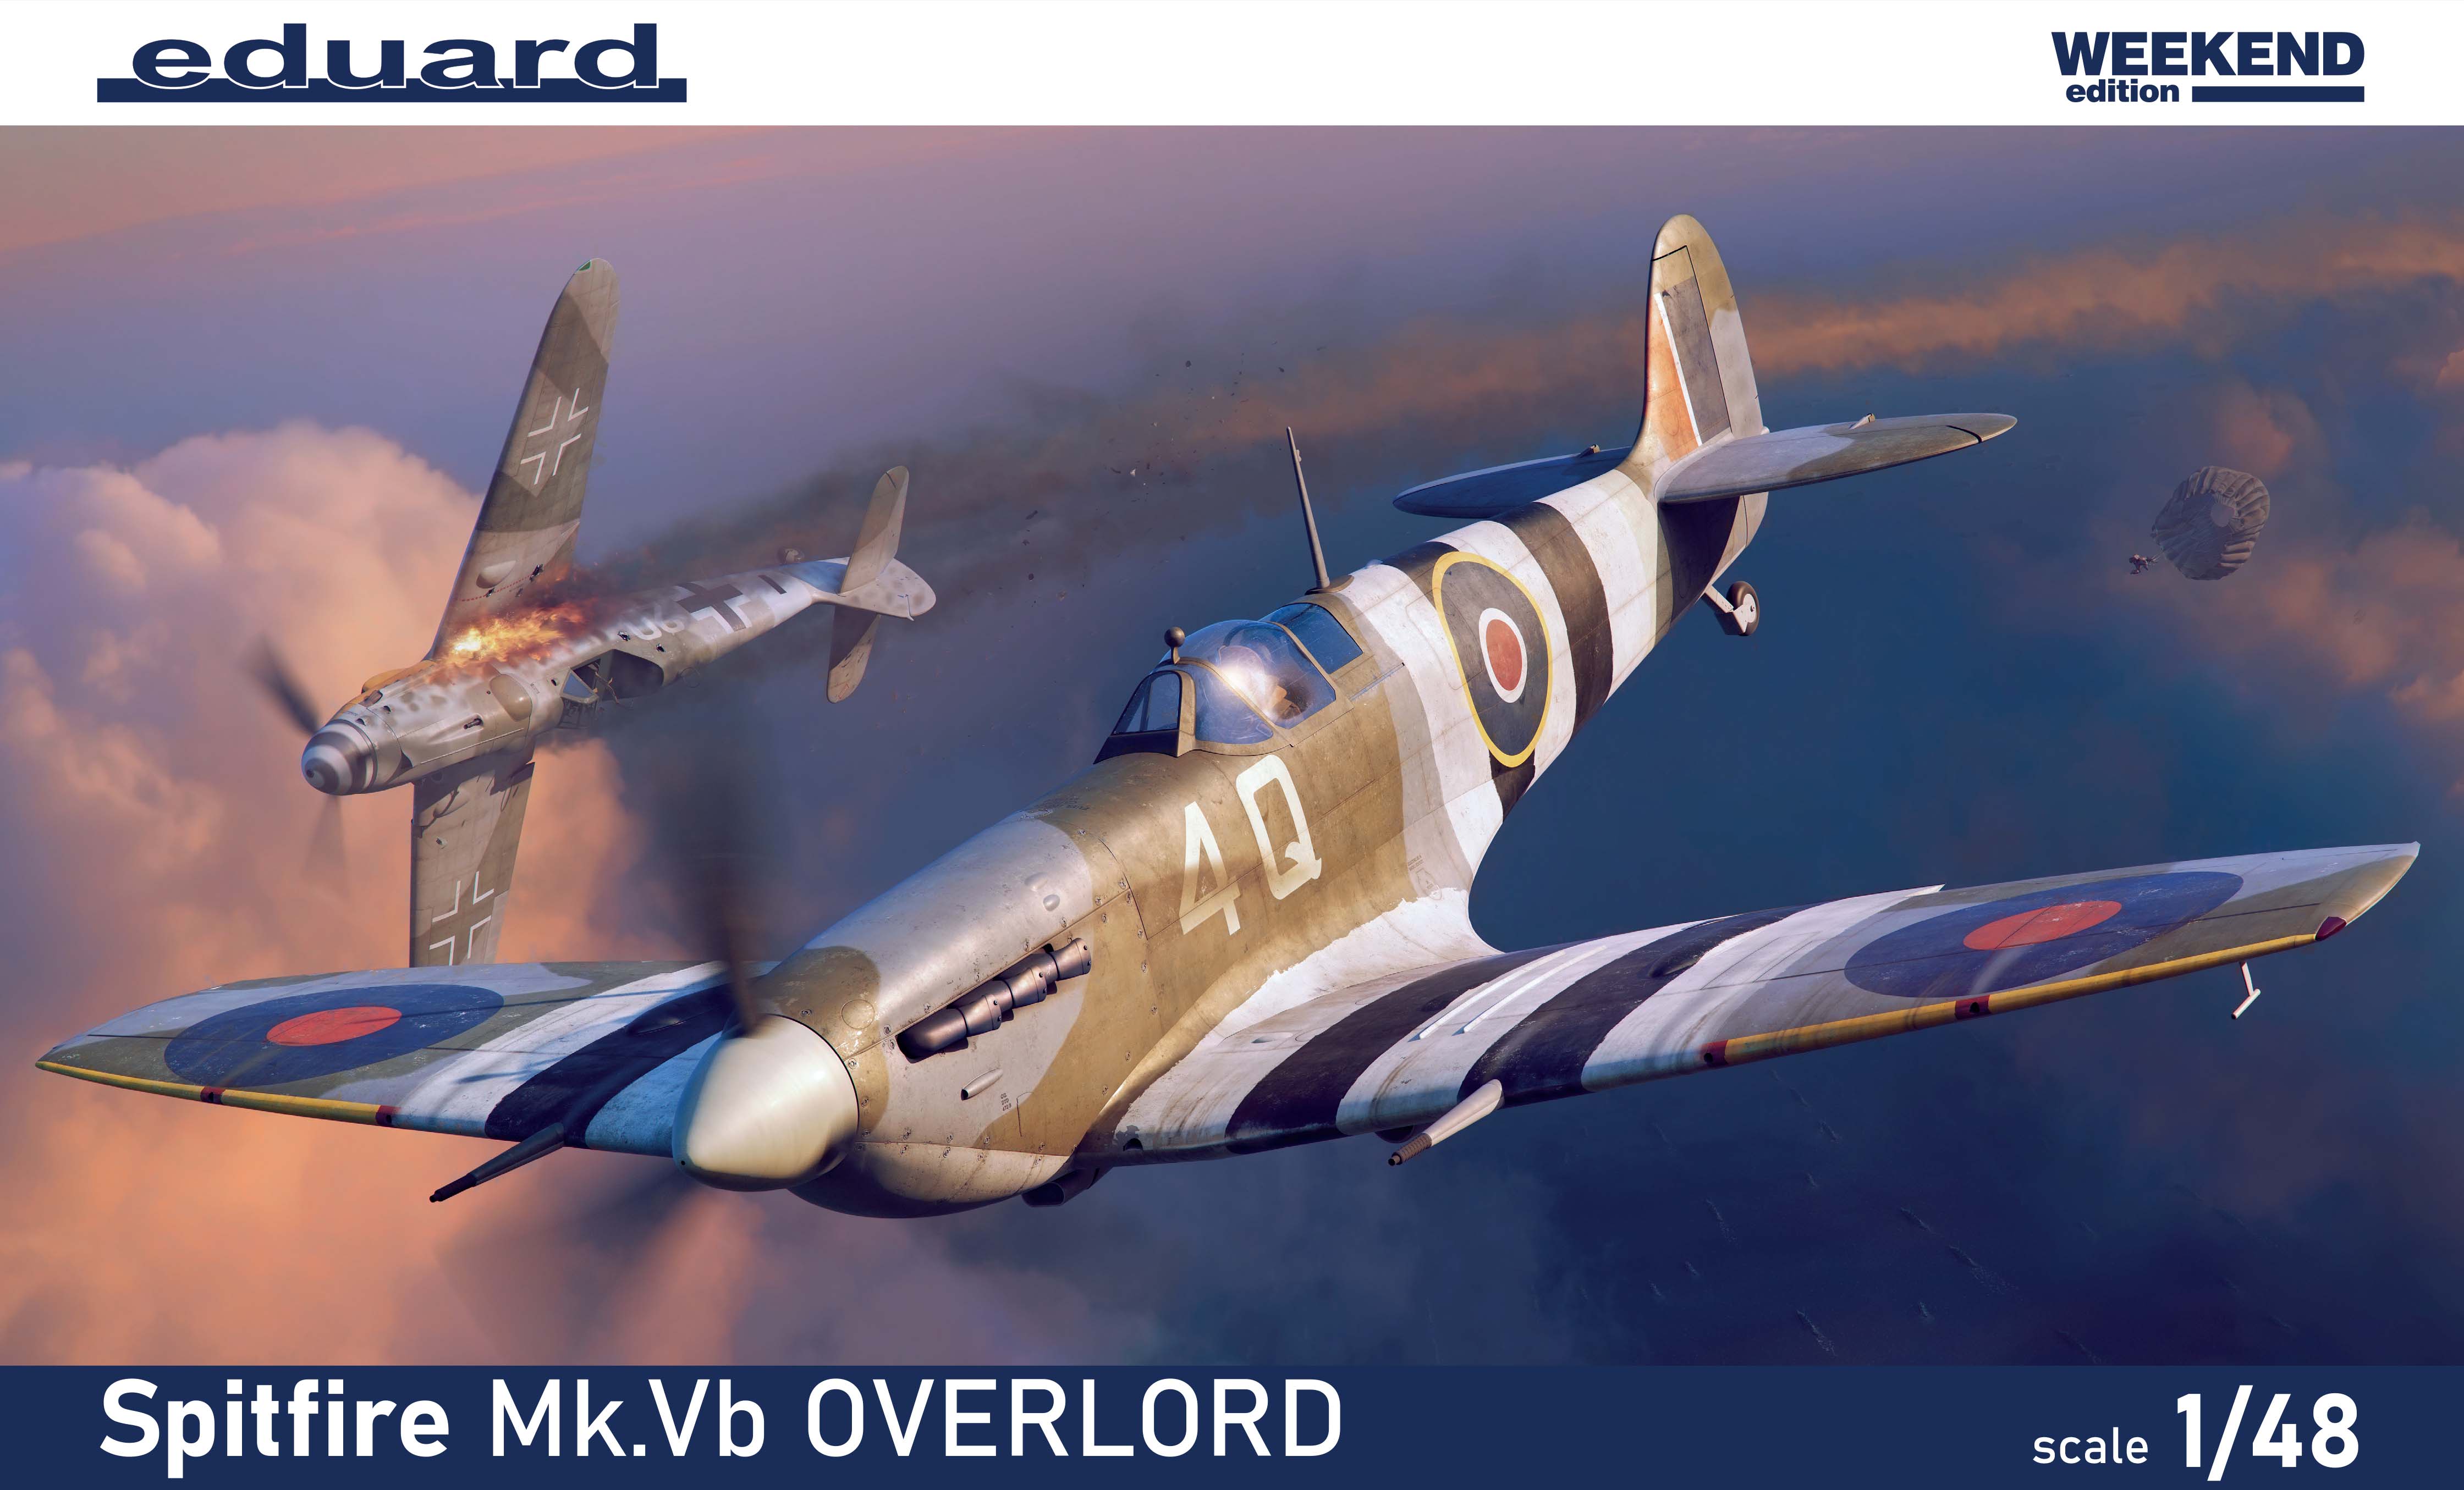 Fotografie 1/48 Spitfire Mk.Vb OVERLORD (Weekend)